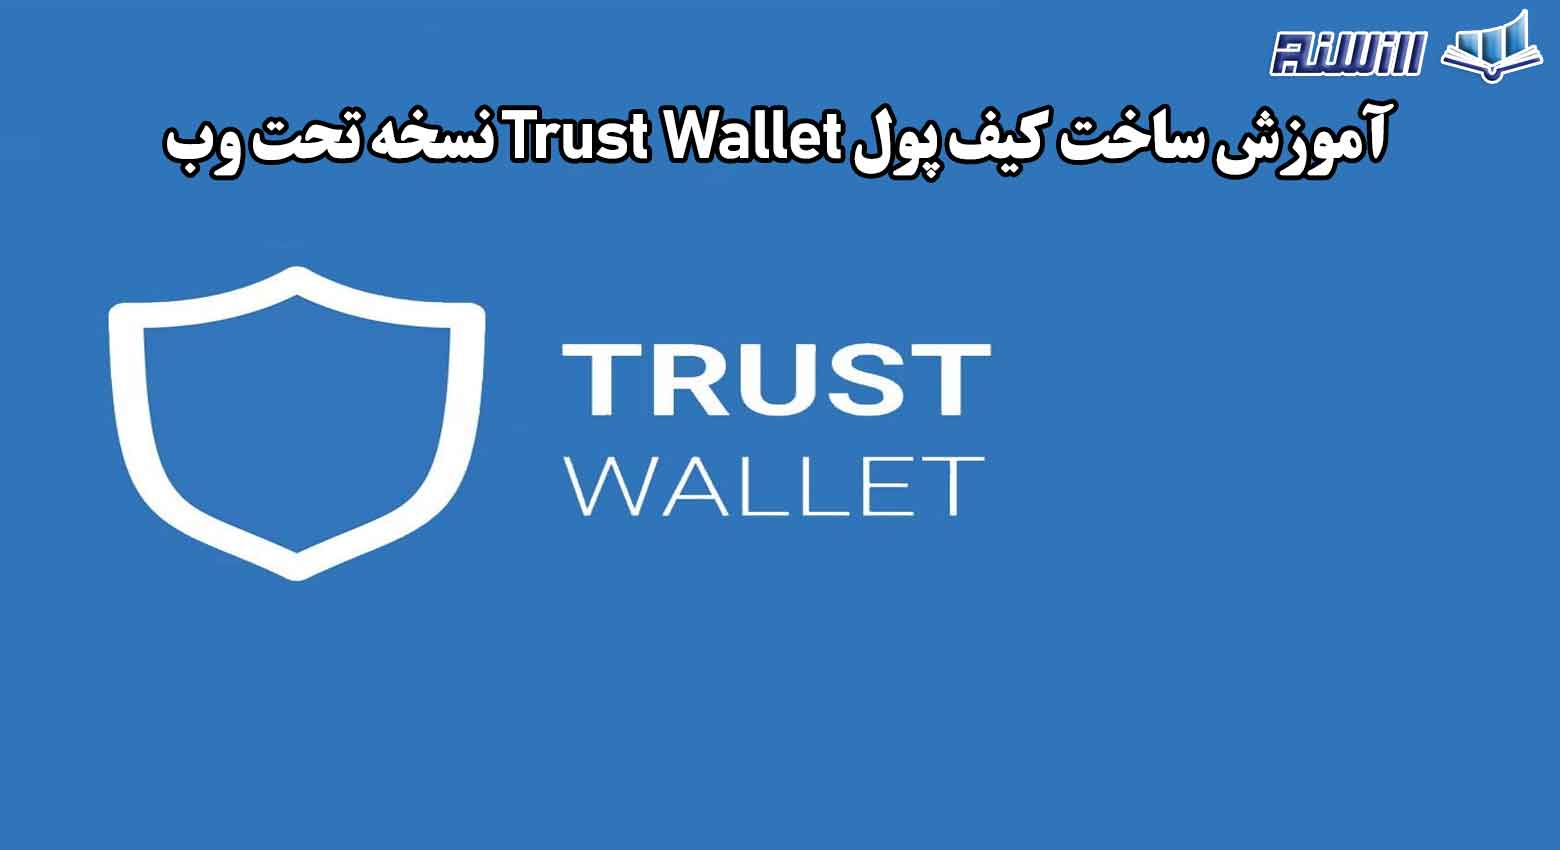 آموزش ساخت کیف پول Trust Wallet نسخه تحت وب